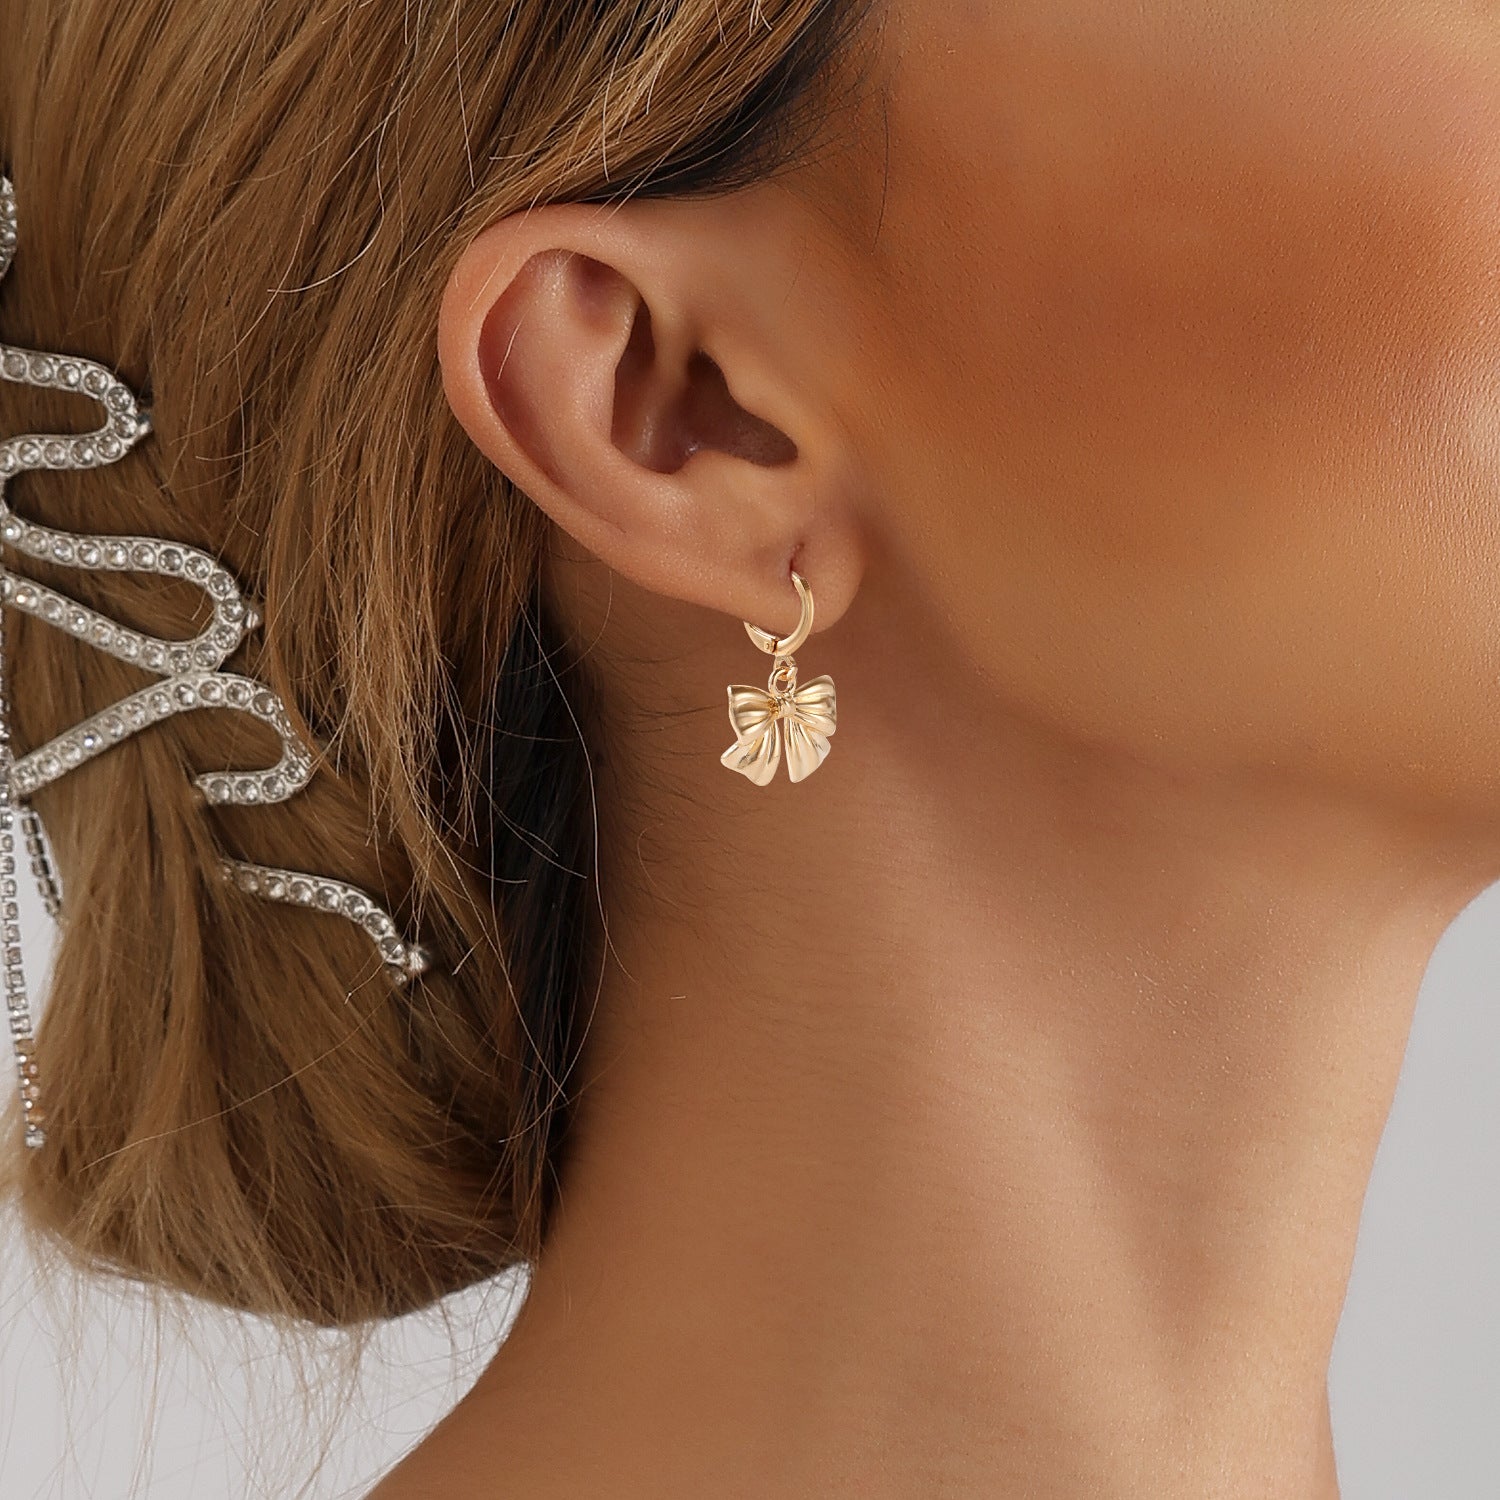 Geometric Bow Metal Earrings For Women